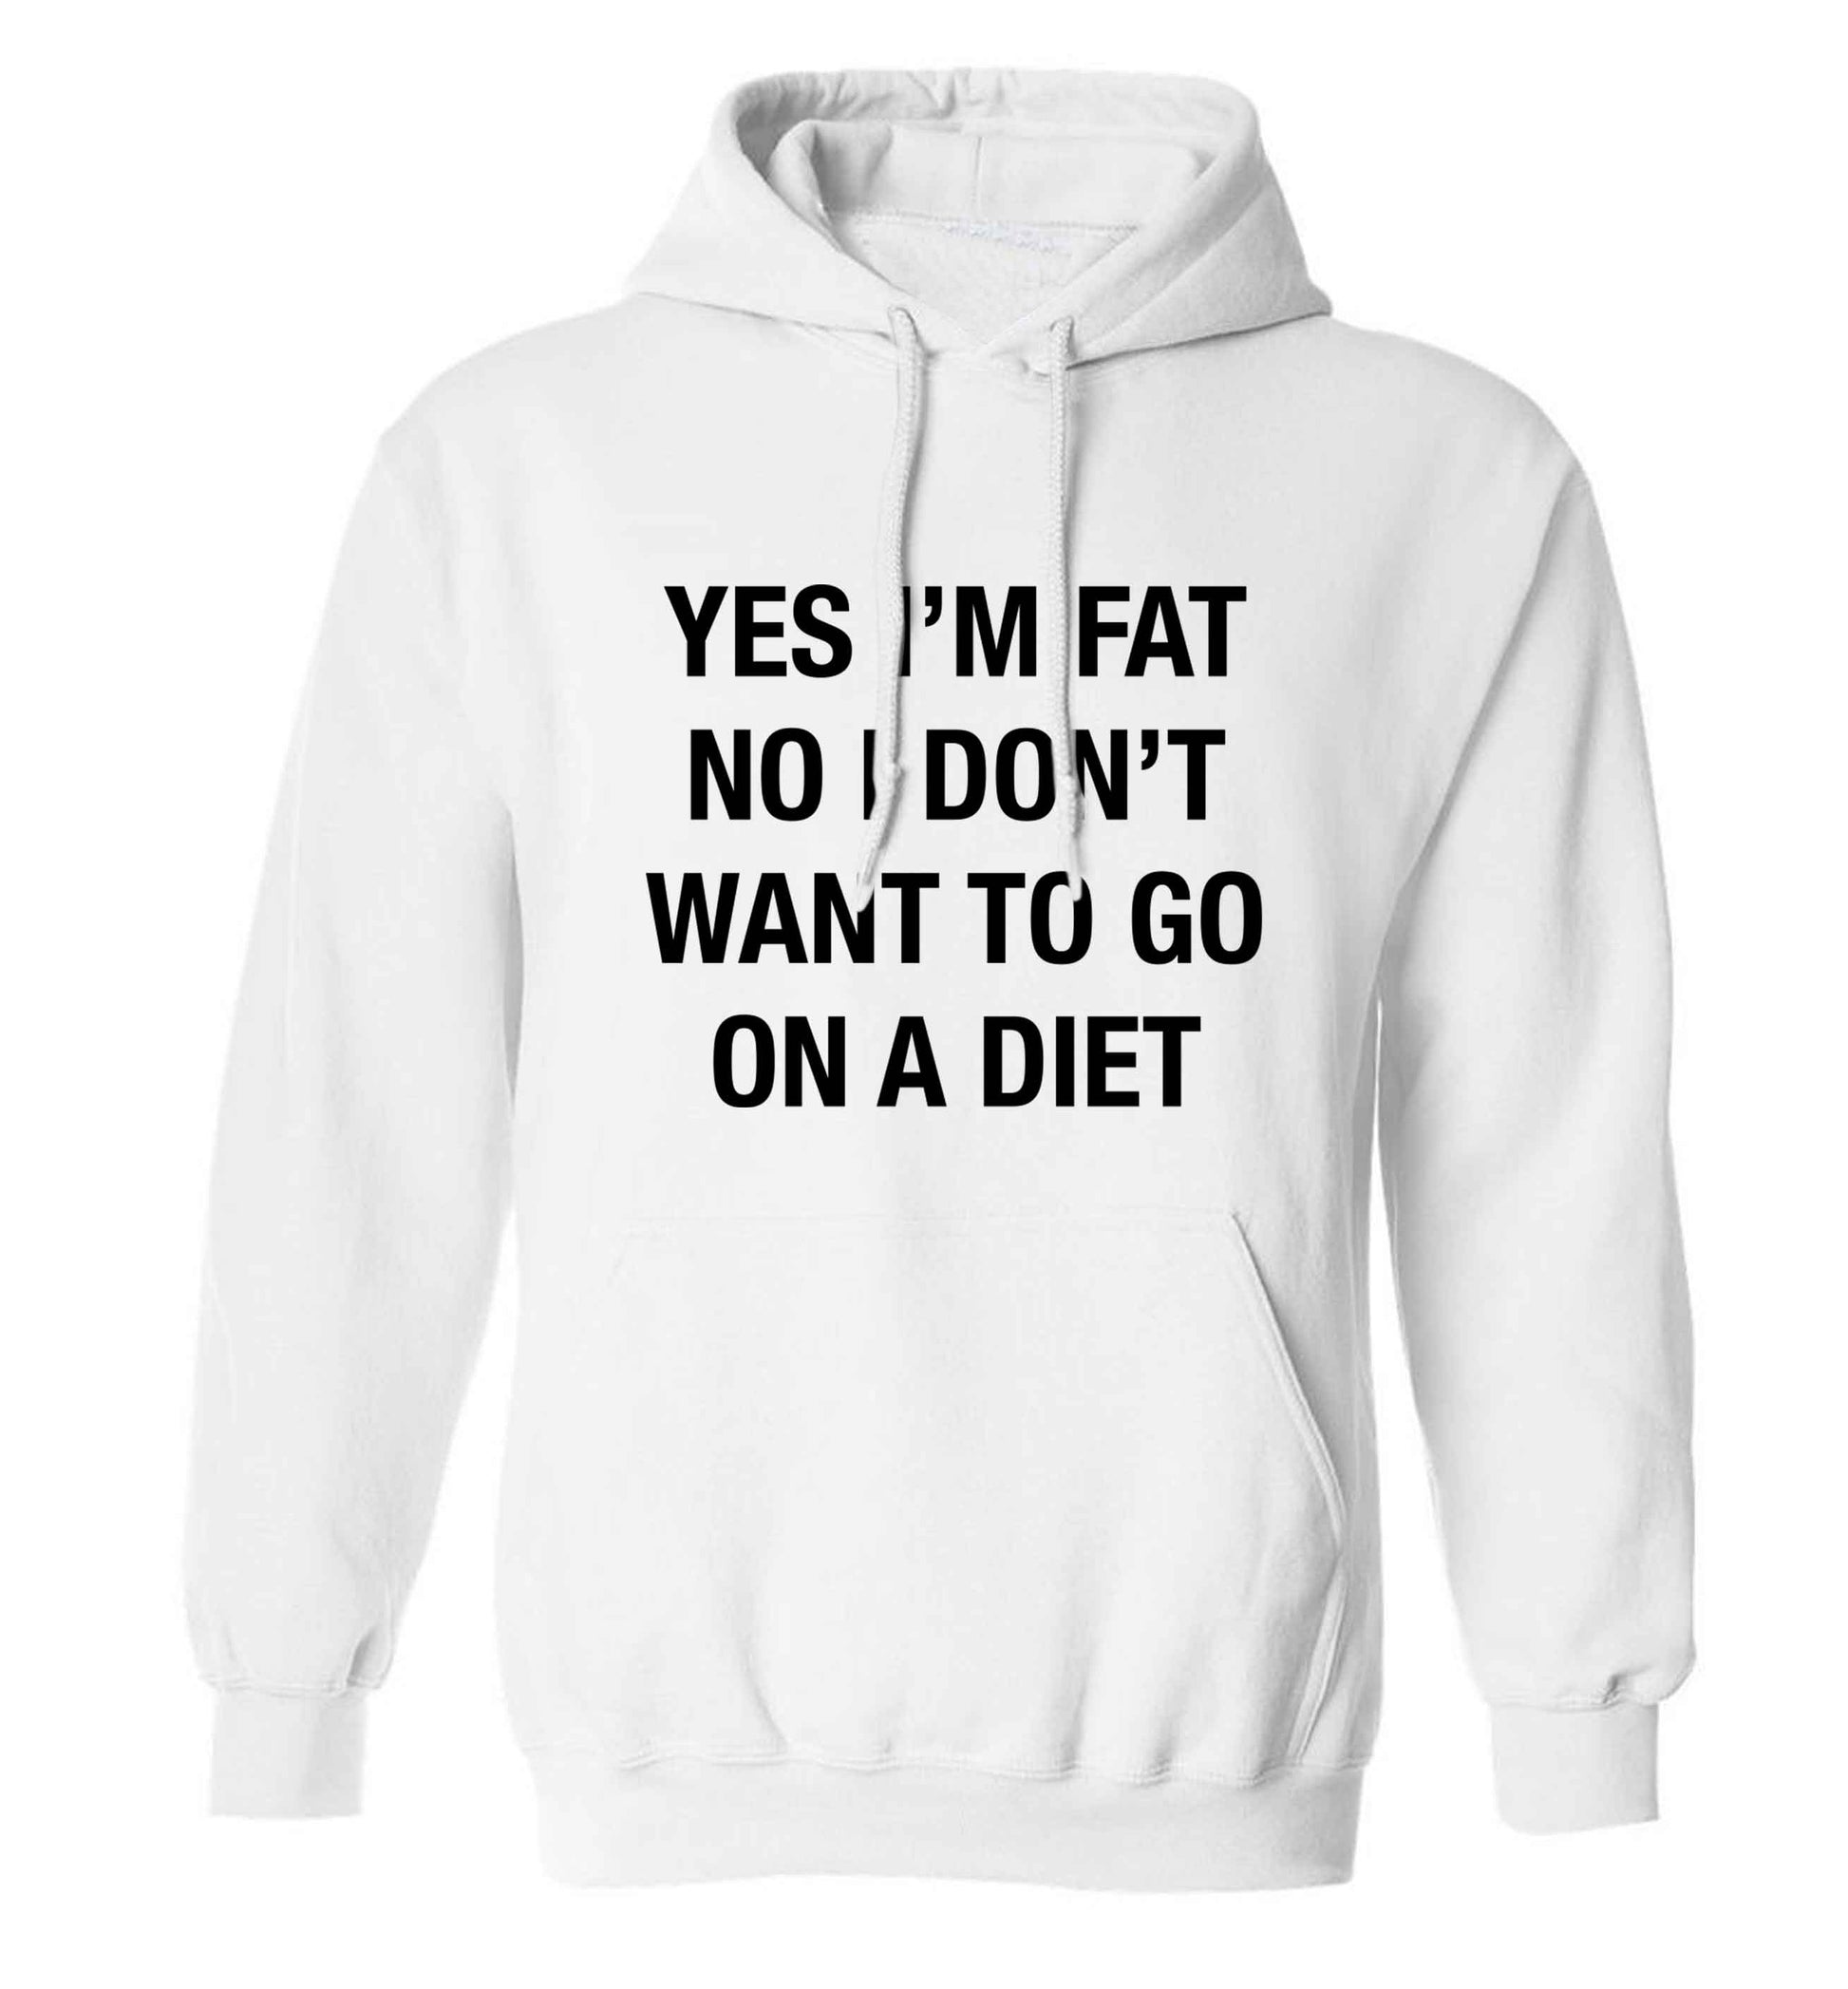 Yes I'm fat, no I don't want to go on a diet adults unisex white hoodie 2XL